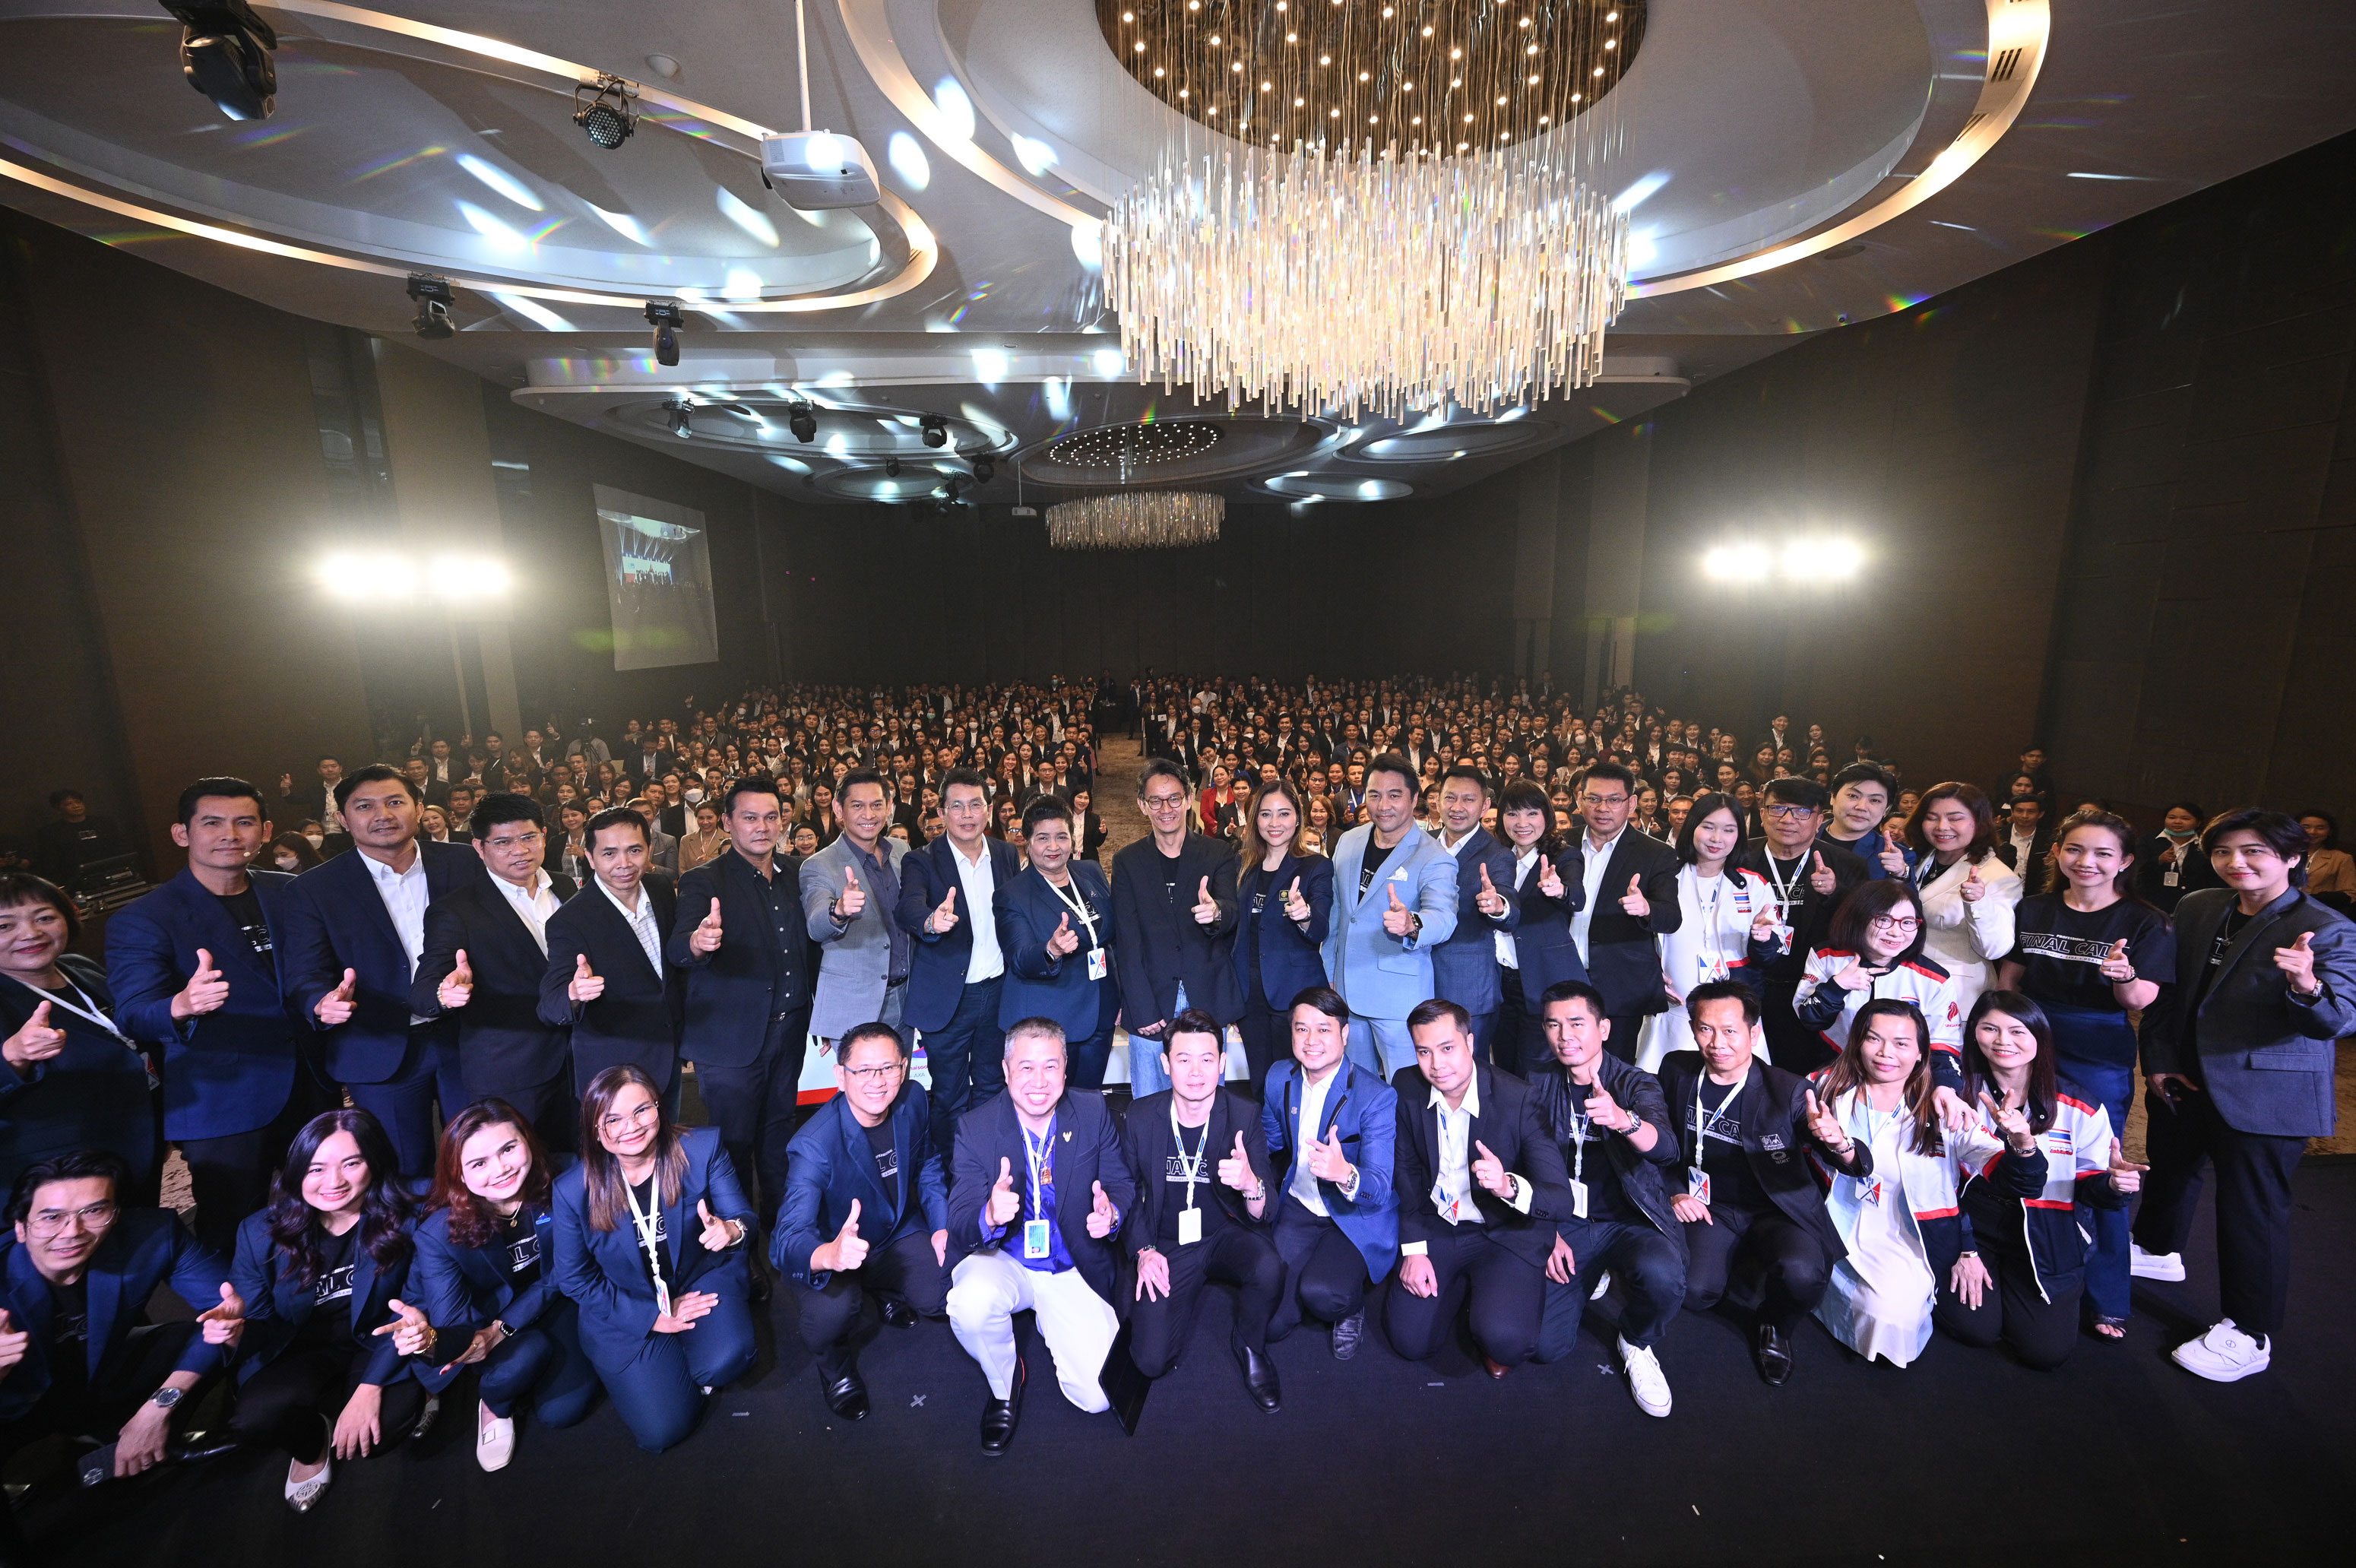 กรุงไทย-แอกซ่า ประกันชีวิต จัดงาน Krungthai-AXA Professional Final Call 2023 หนุนฝ่ายขายให้ก้าวพิชิตเป้าหมายเติบโตอย่างยั่งยืน